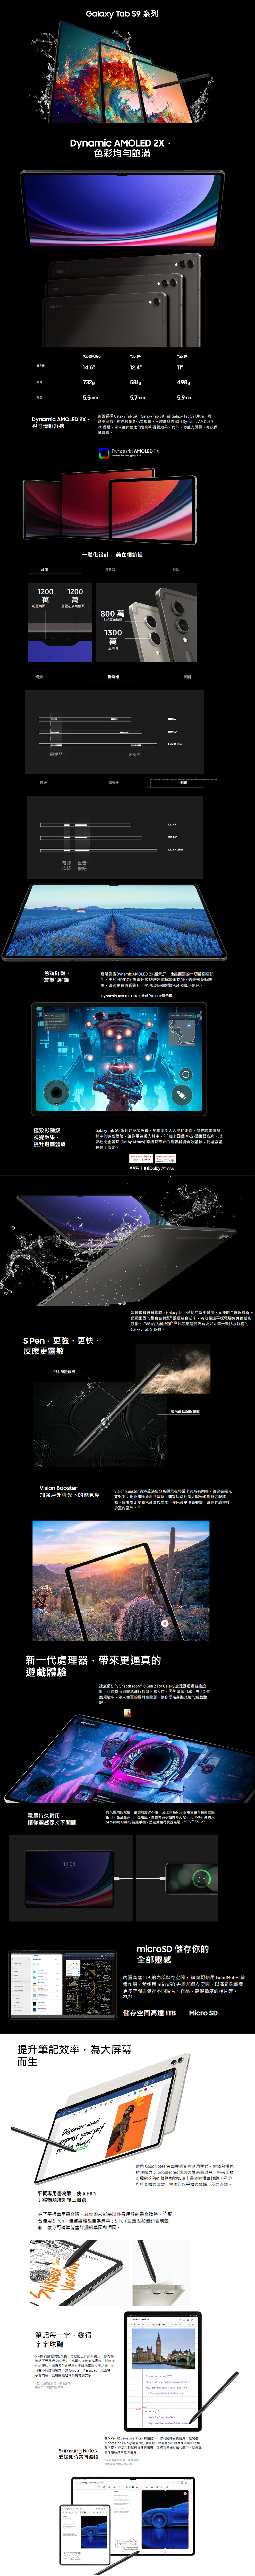 Samsung Galaxy Tab S9 Ultra 14.6